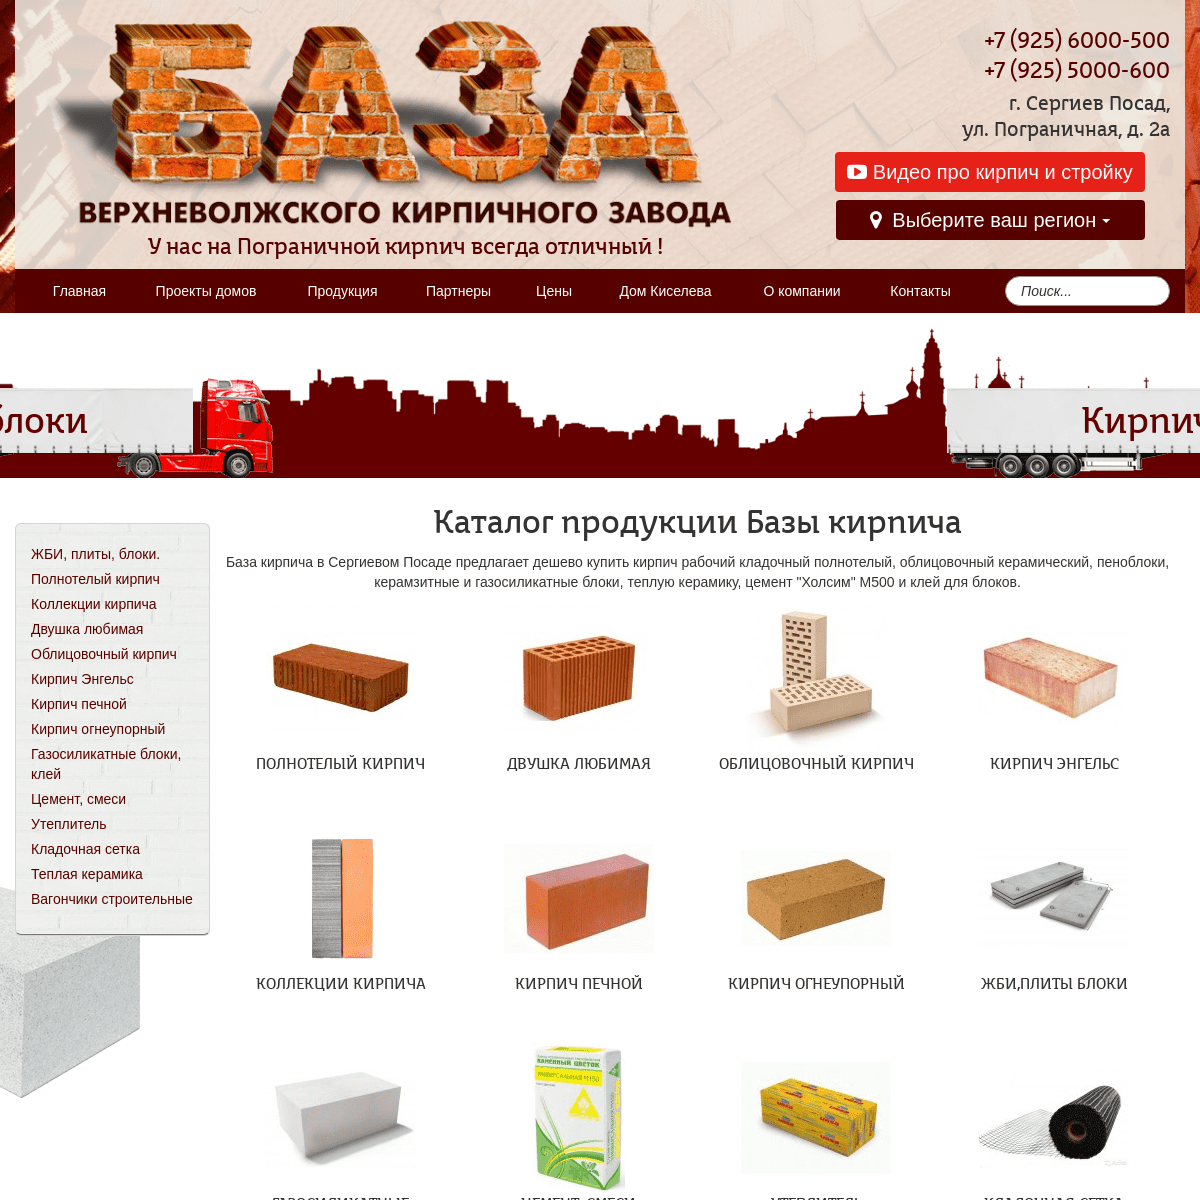 База кирпича в Сергиевом Посаде, купить кирпич в Москве